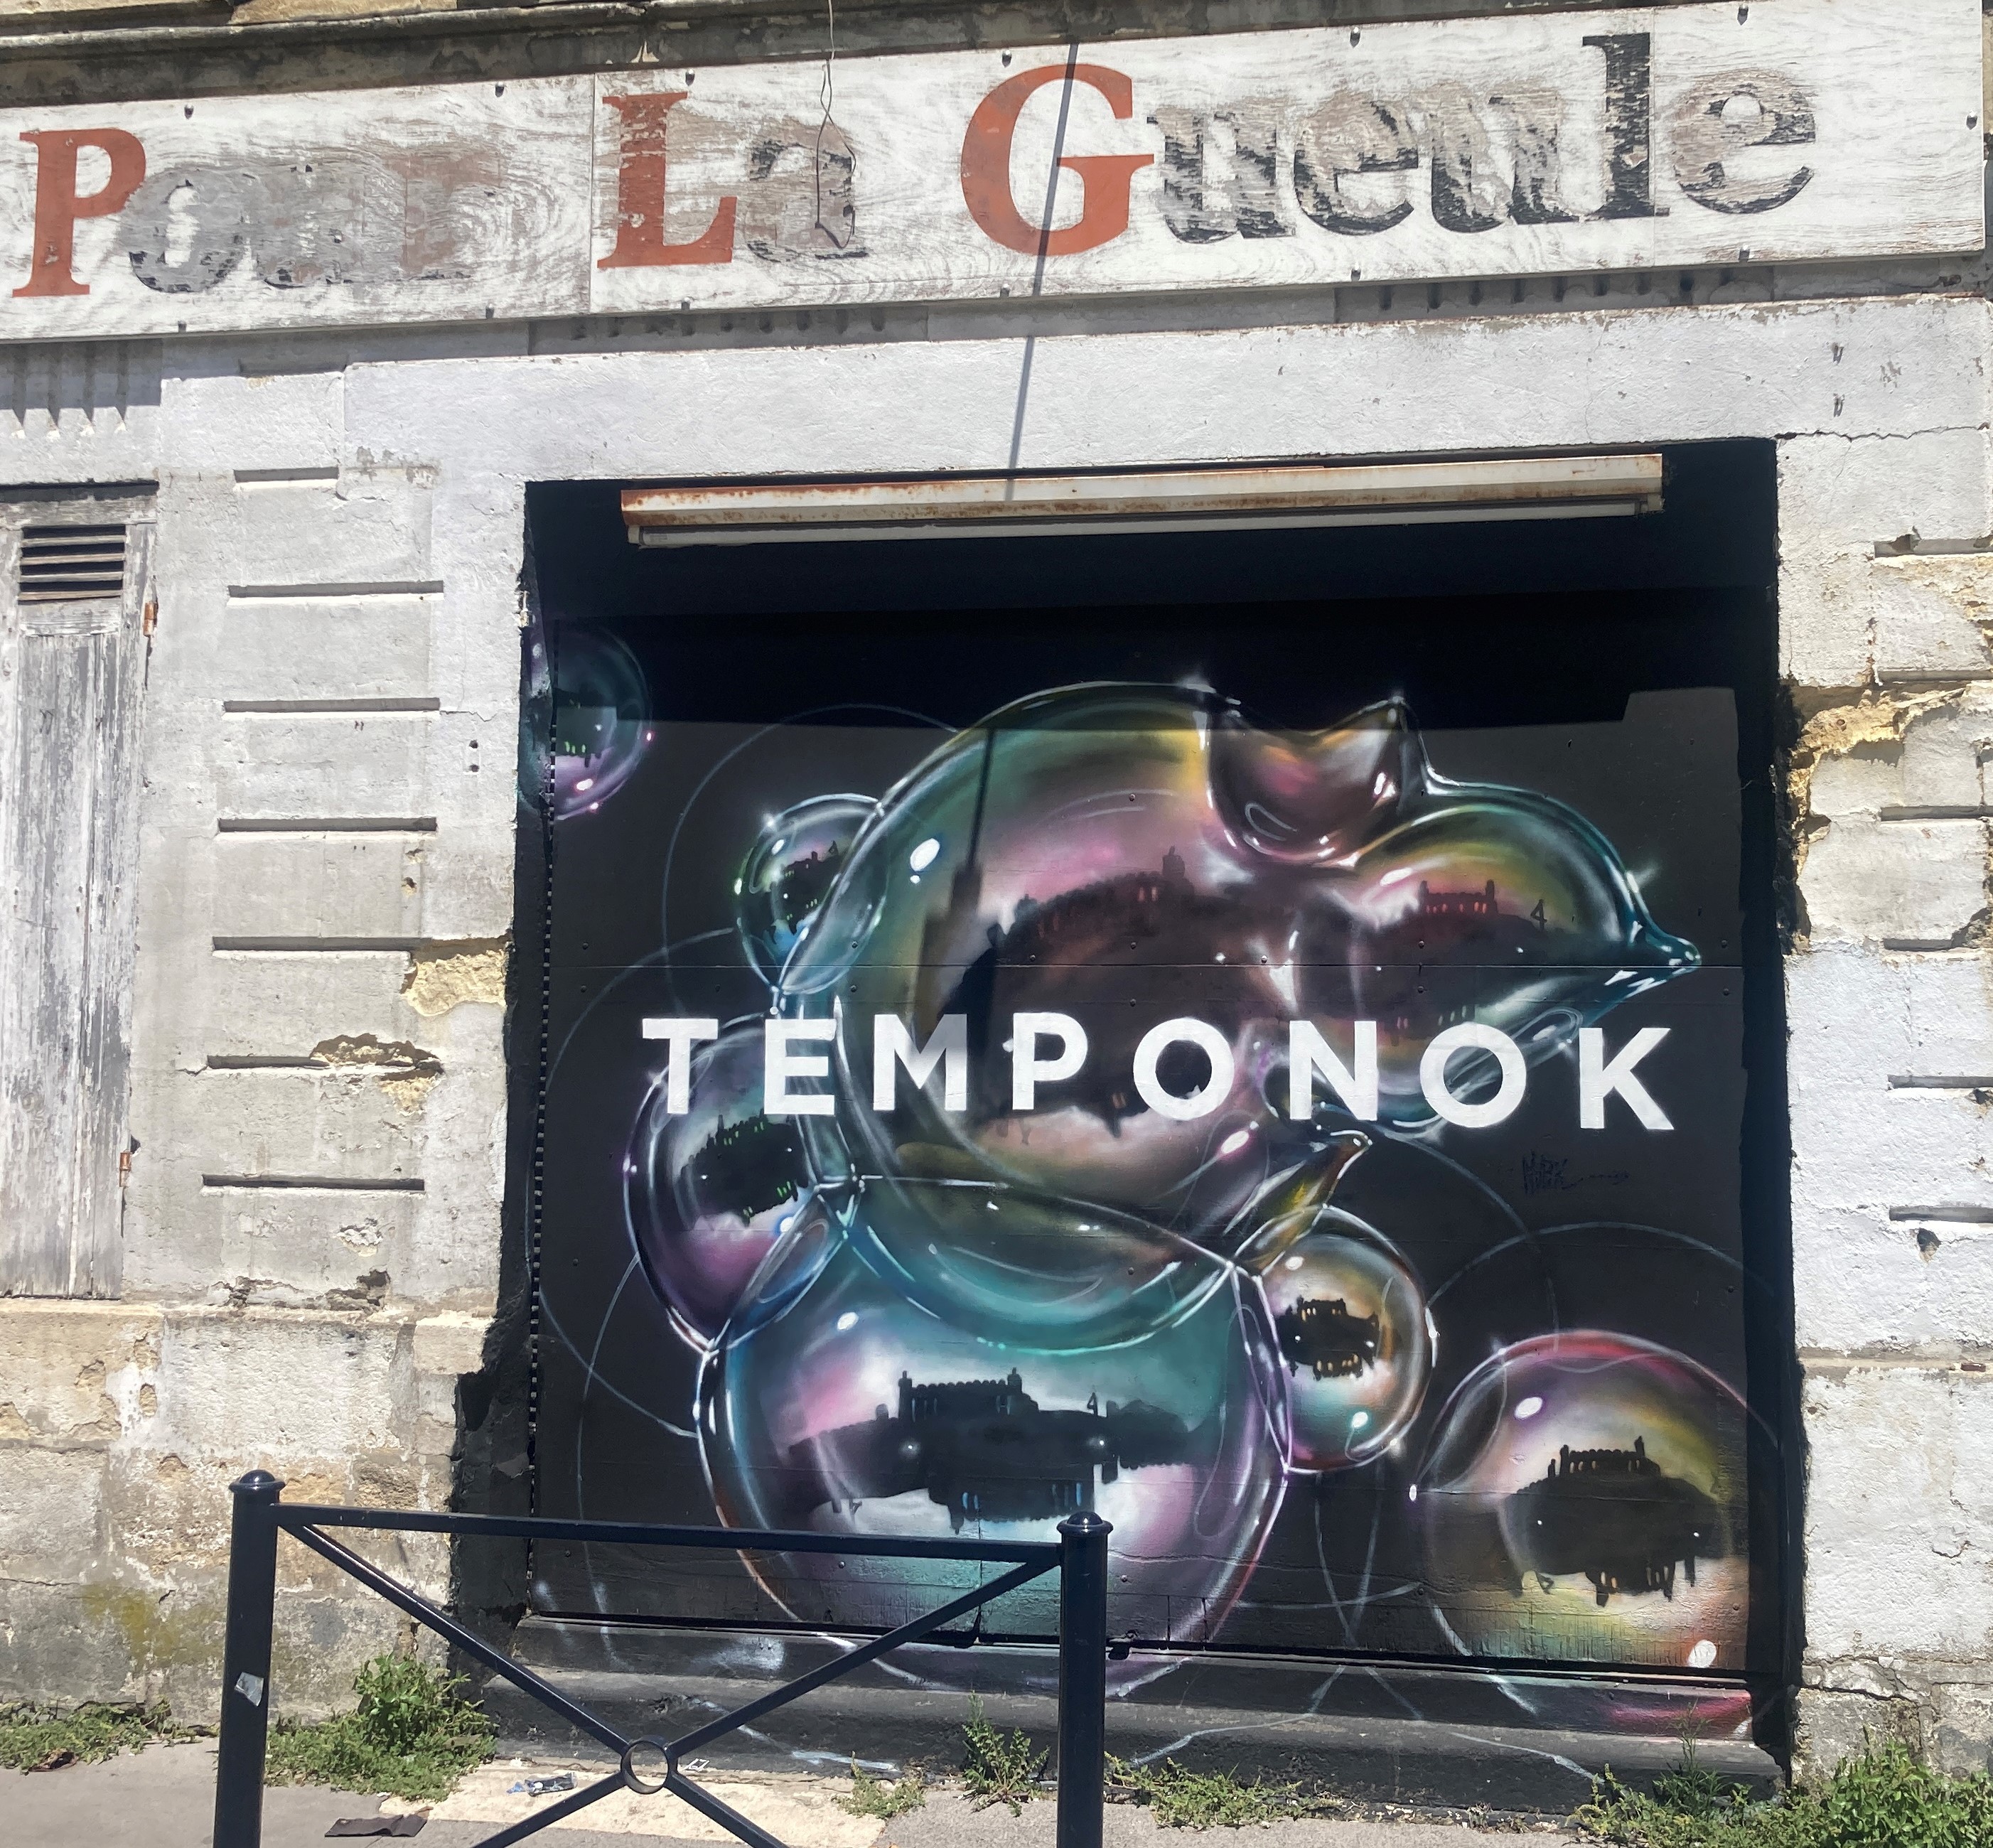 Graffiti 6889 TEMPONOK de Tempo Nok capturé par Mephisroth à Bordeaux France